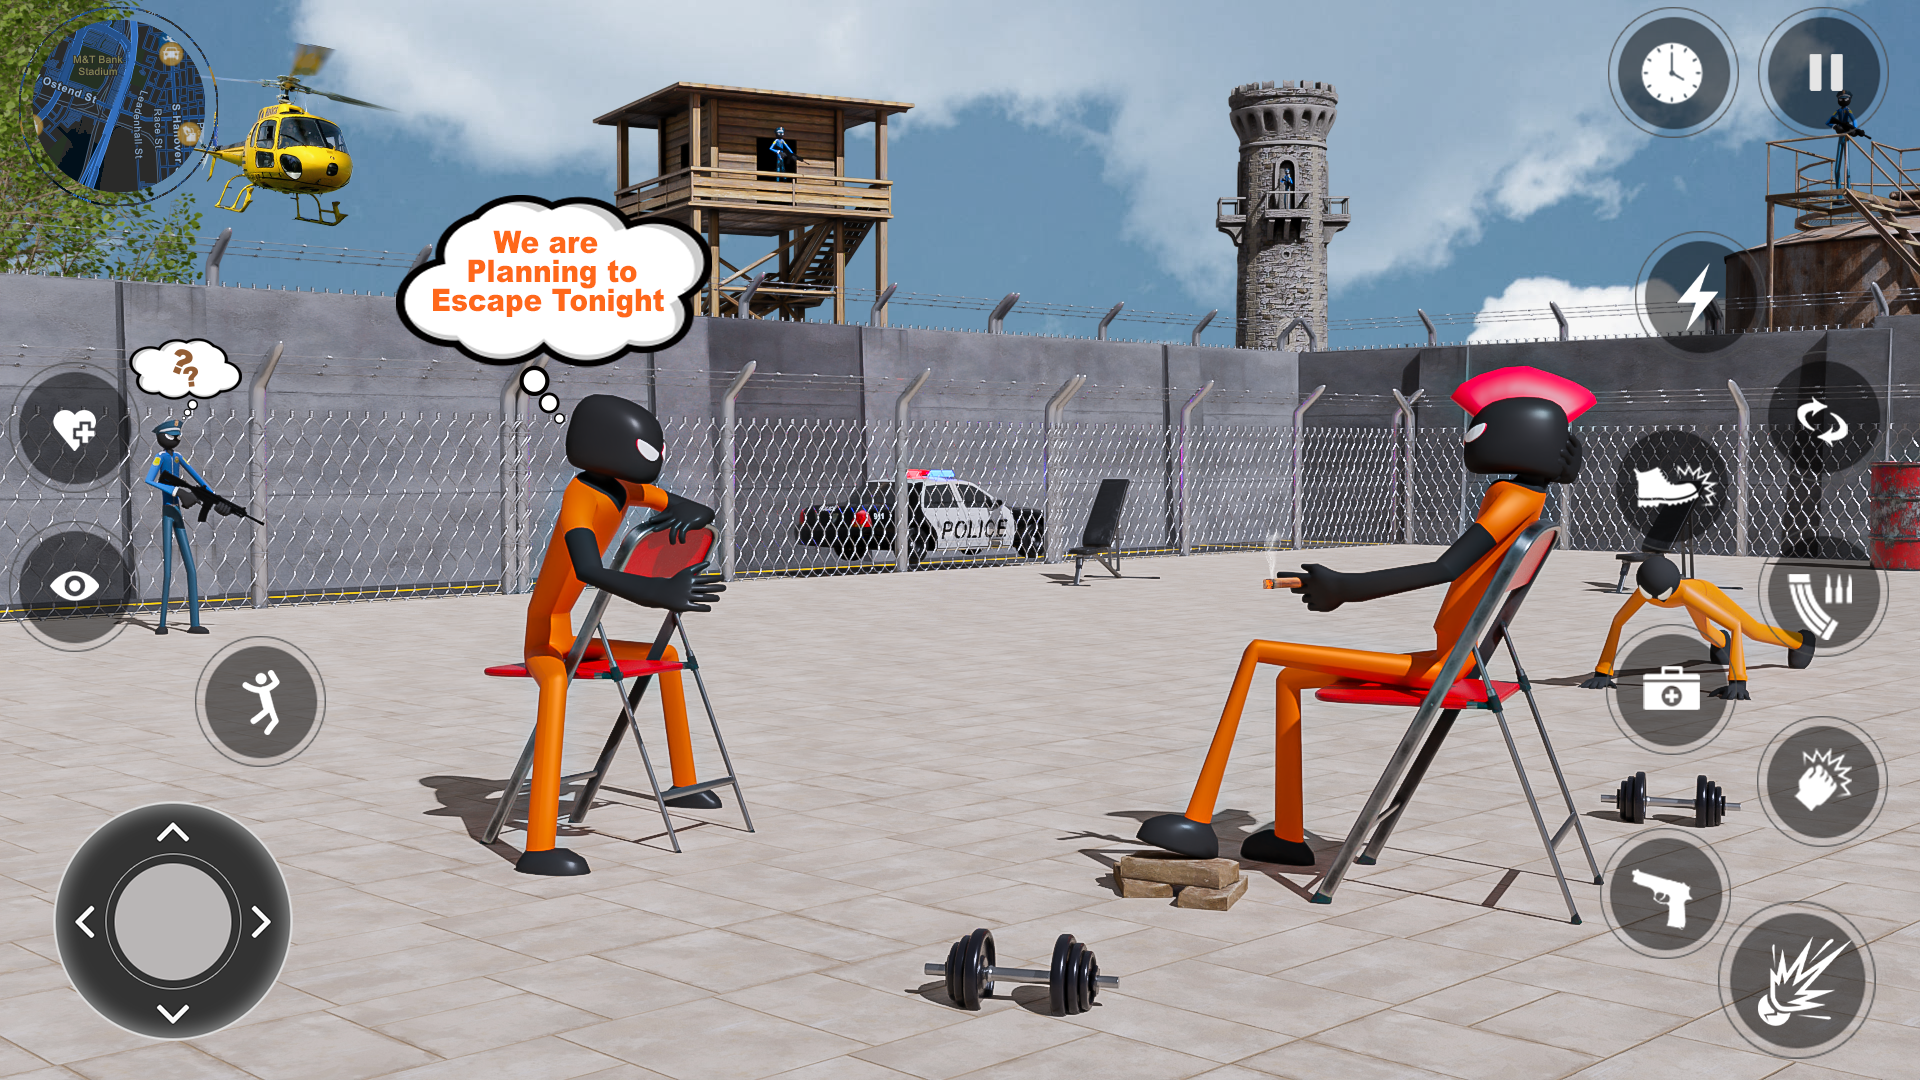 Stickman jail-break escape 2 APK for Android Download